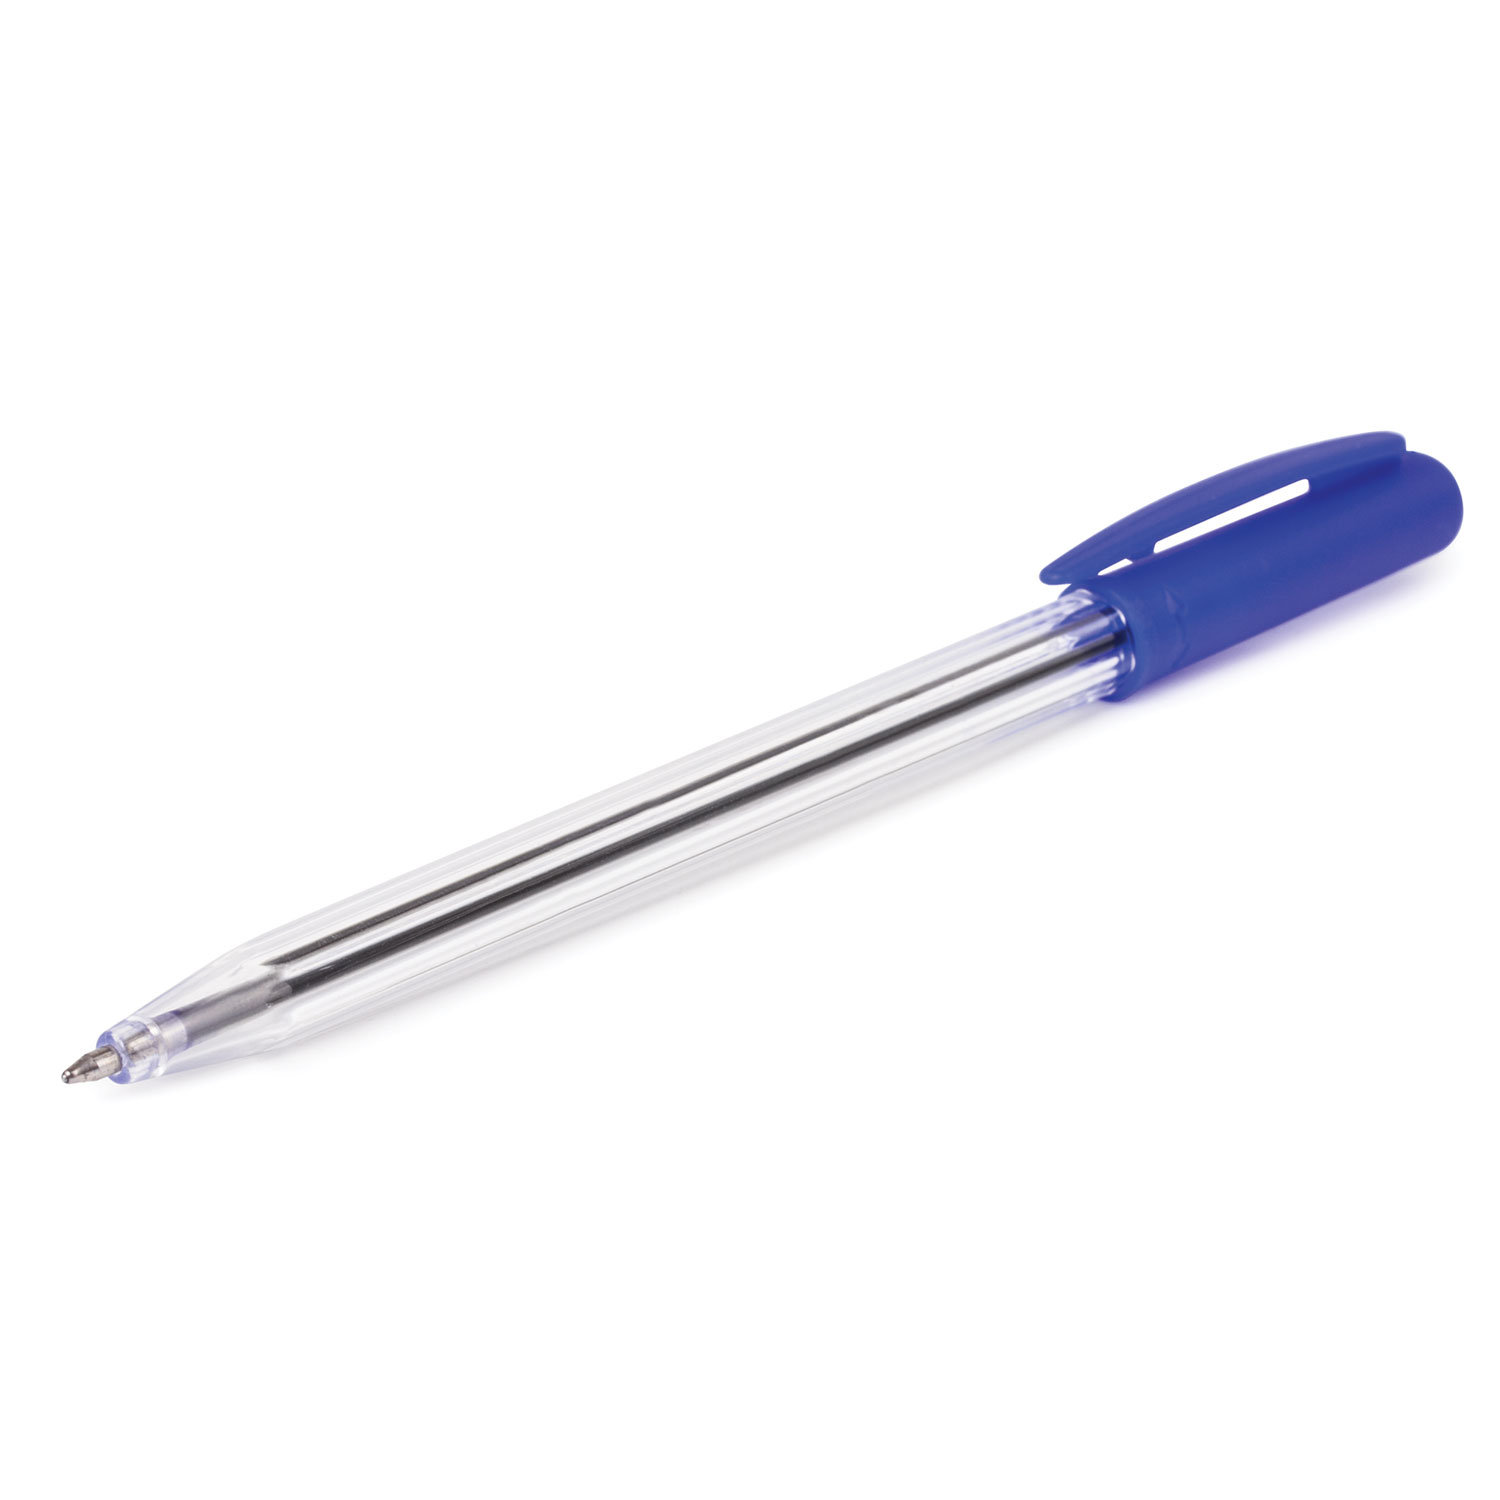 Ручка с прозрачным корпусом. Ручка шариковая,BRAUBERG line, 1,0мм, синяя, корпус прозрачный с141097. BRAUBERG шариковая ручка прозрачный корпус 1,0 mm. Синяя ручка БРАУБЕРГ. Ручки шариковые БРАУБЕРГ.